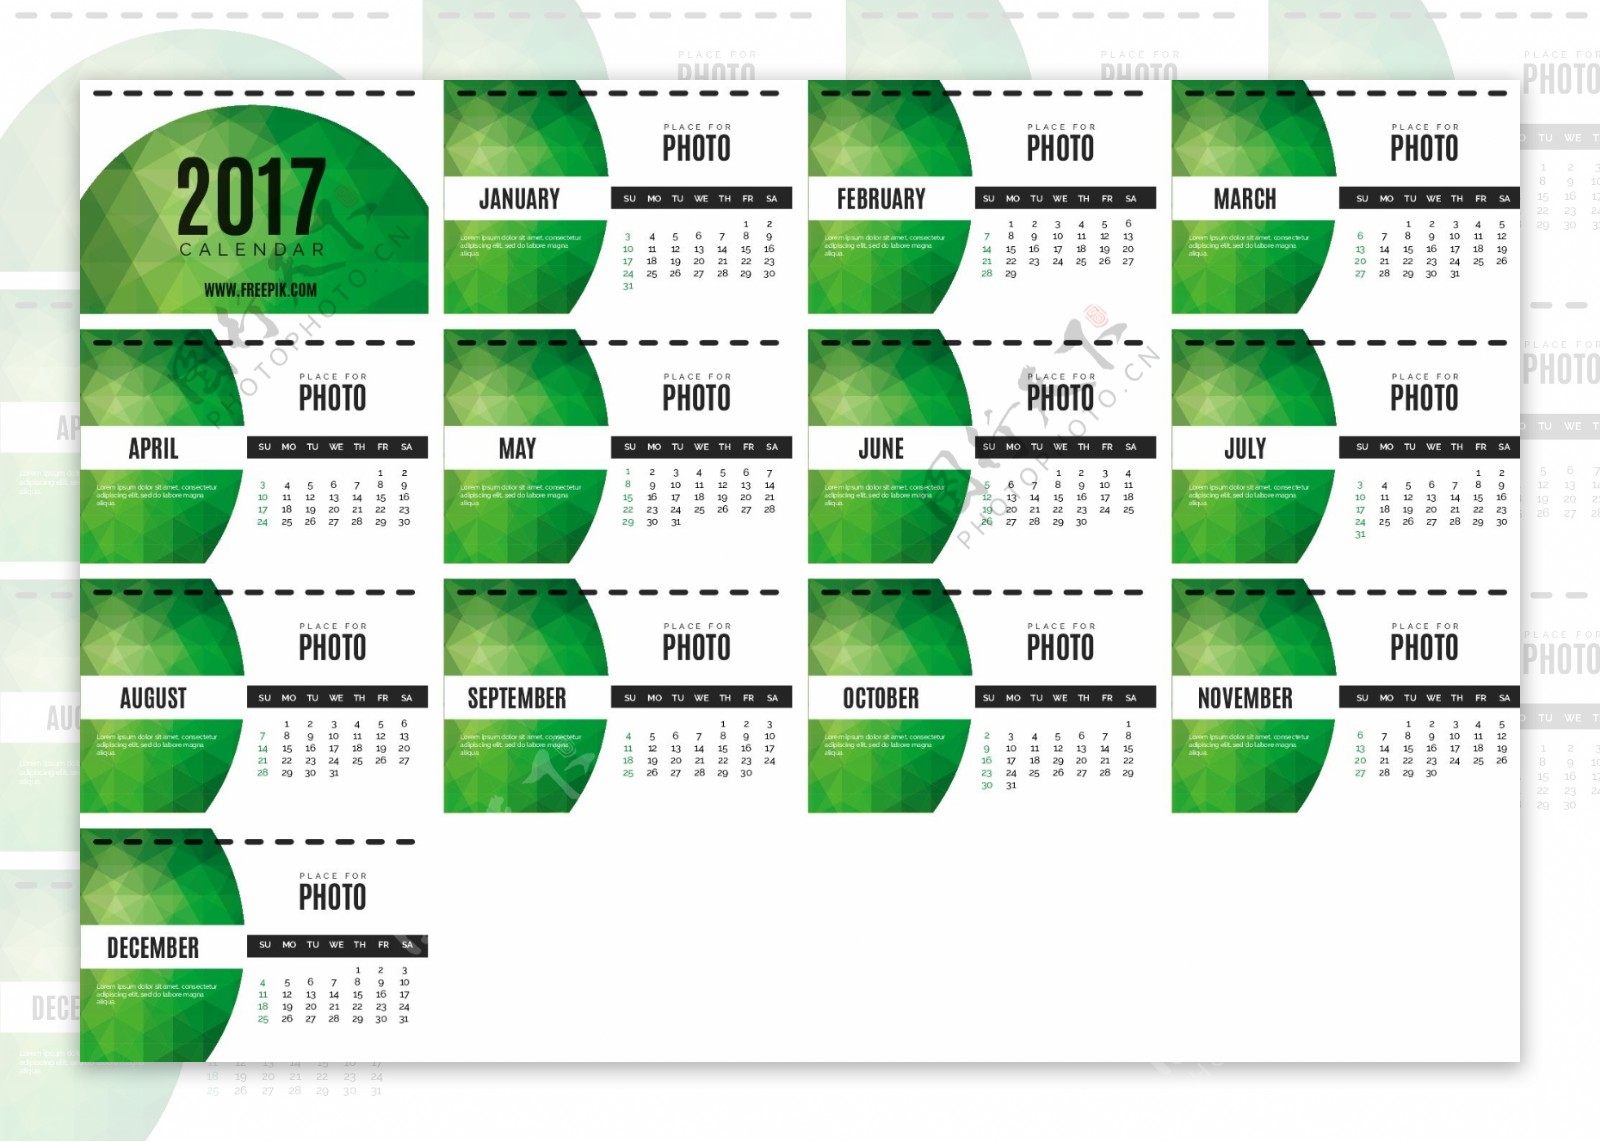 2017绿色几何日历